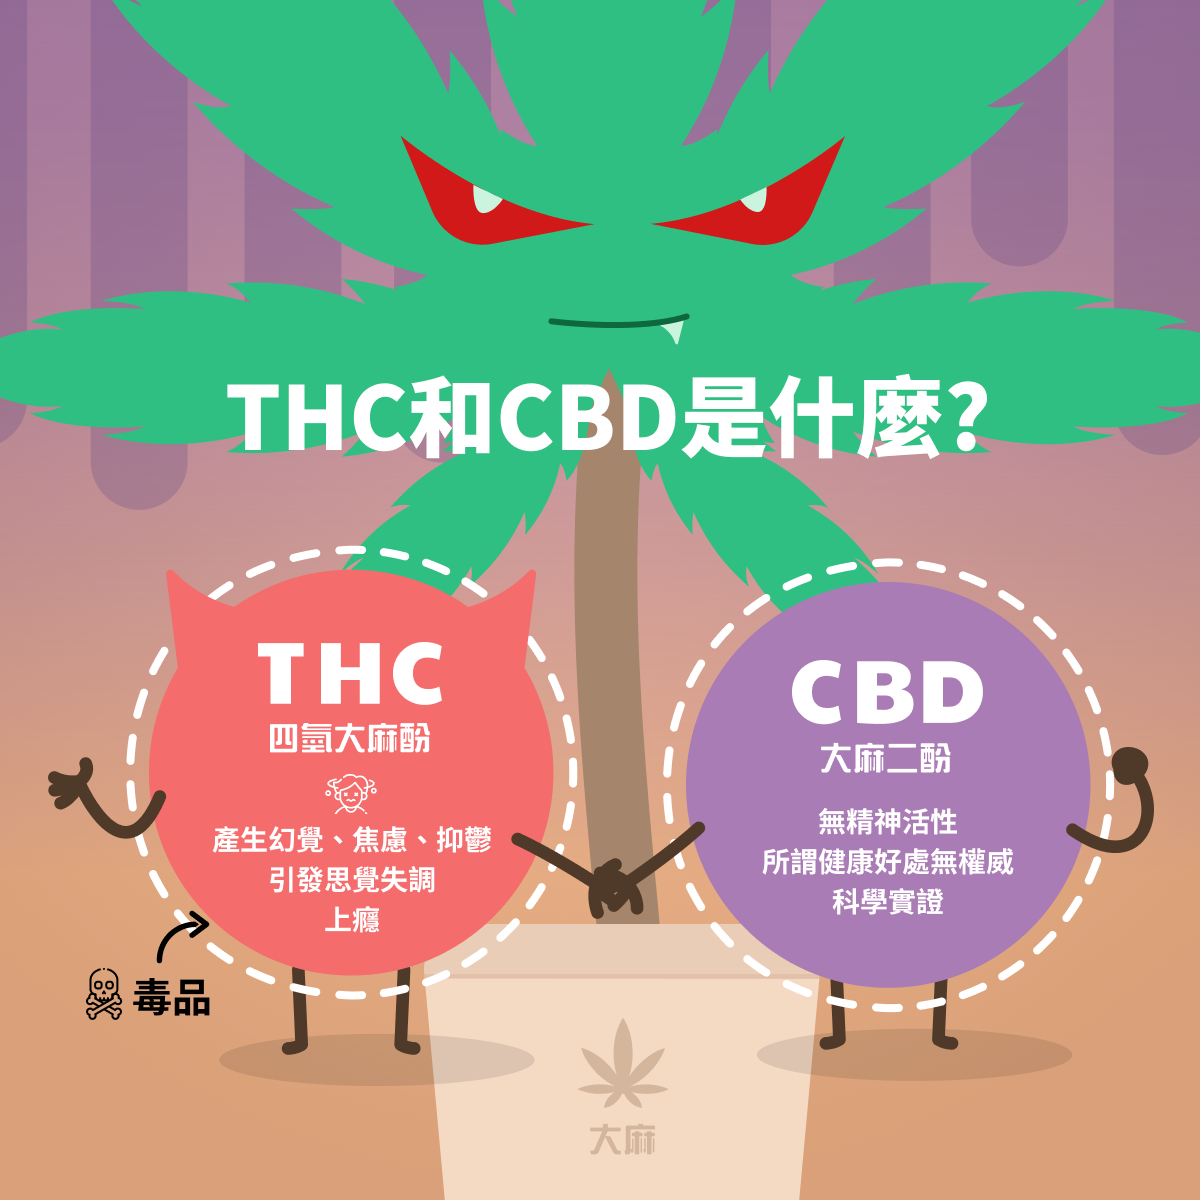 THC 和 CBD 是什麼?